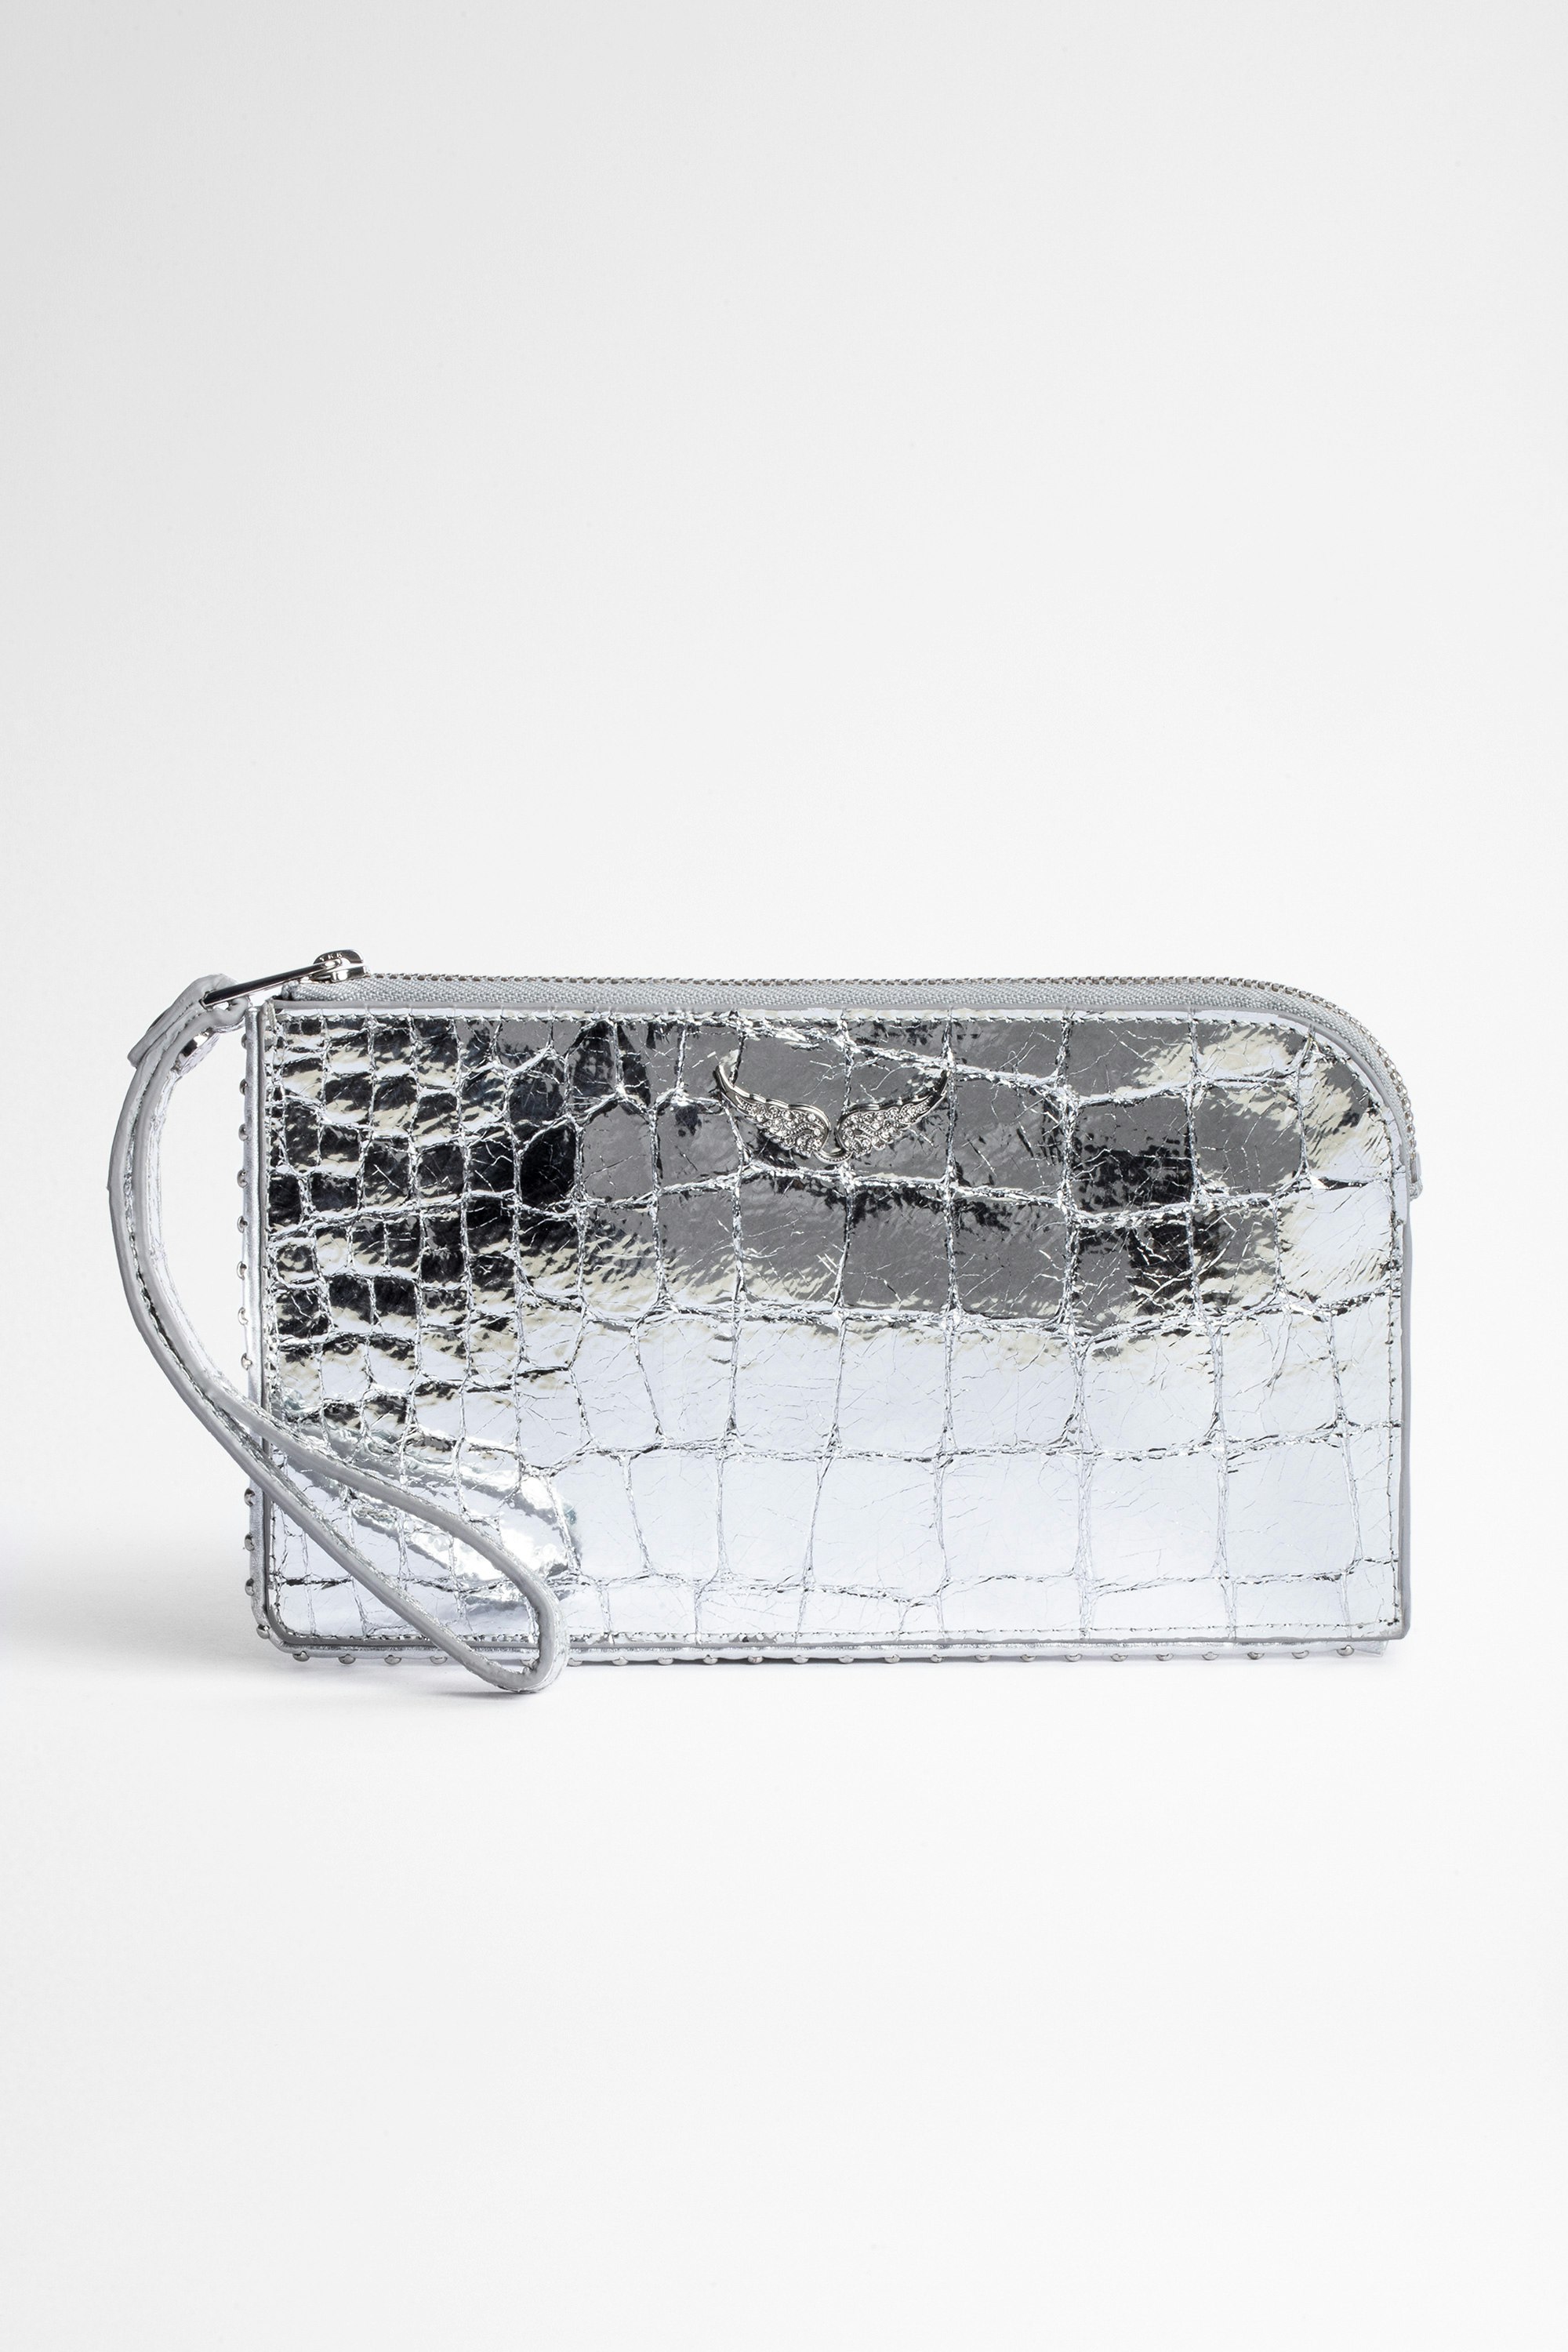 Pochette Phone Wallet Embossed Pochette de téléphone en cuir silver embossé effet crocodile